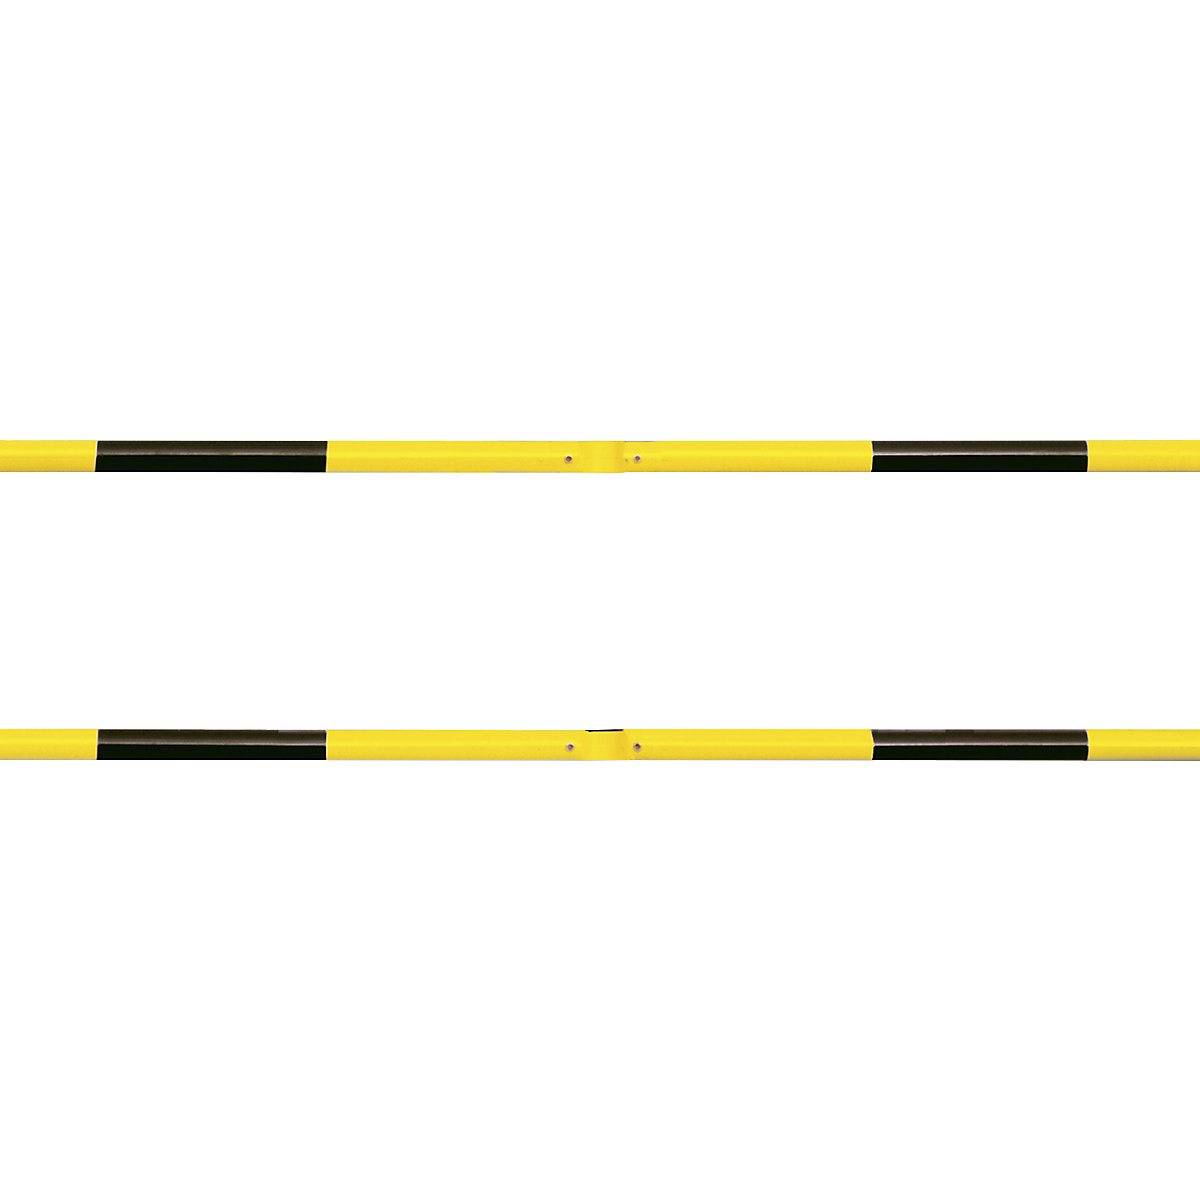 Systém zábradlí, příčná trubka Ø 60 mm, žlutá/černá, délka 1500 mm